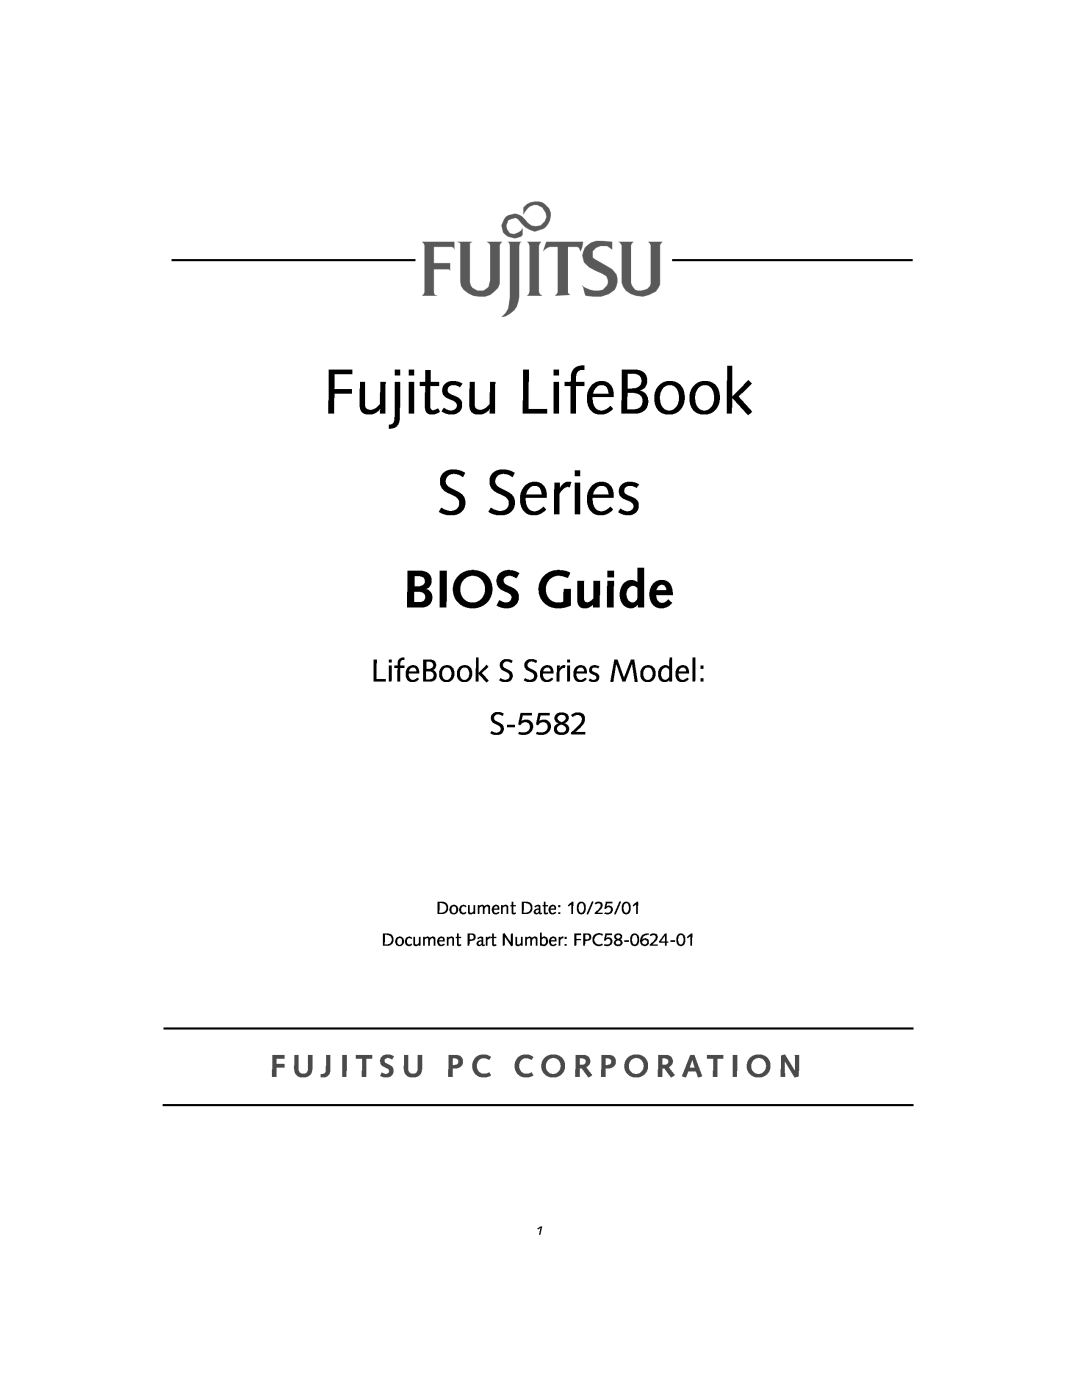 Fujitsu manual Fujitsu LifeBook S Series, BIOS Guide, LifeBook S Series Model S-5582 